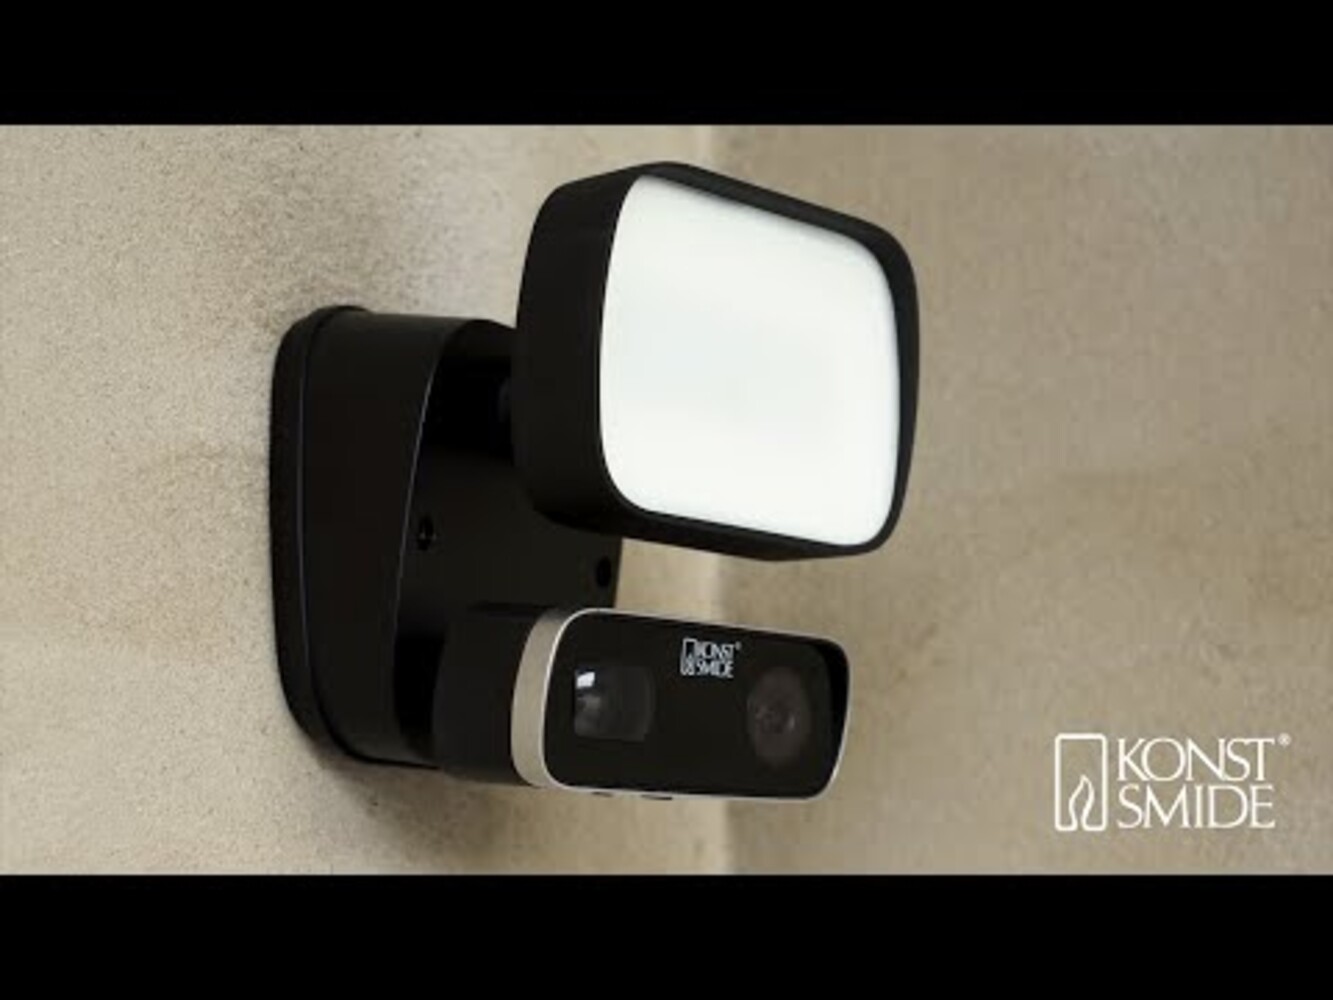 Moderne Überwachungskamera der Marke Konstsmide mit integriertem Lautsprecher und Mikrofon sowie Wifi-Funktion